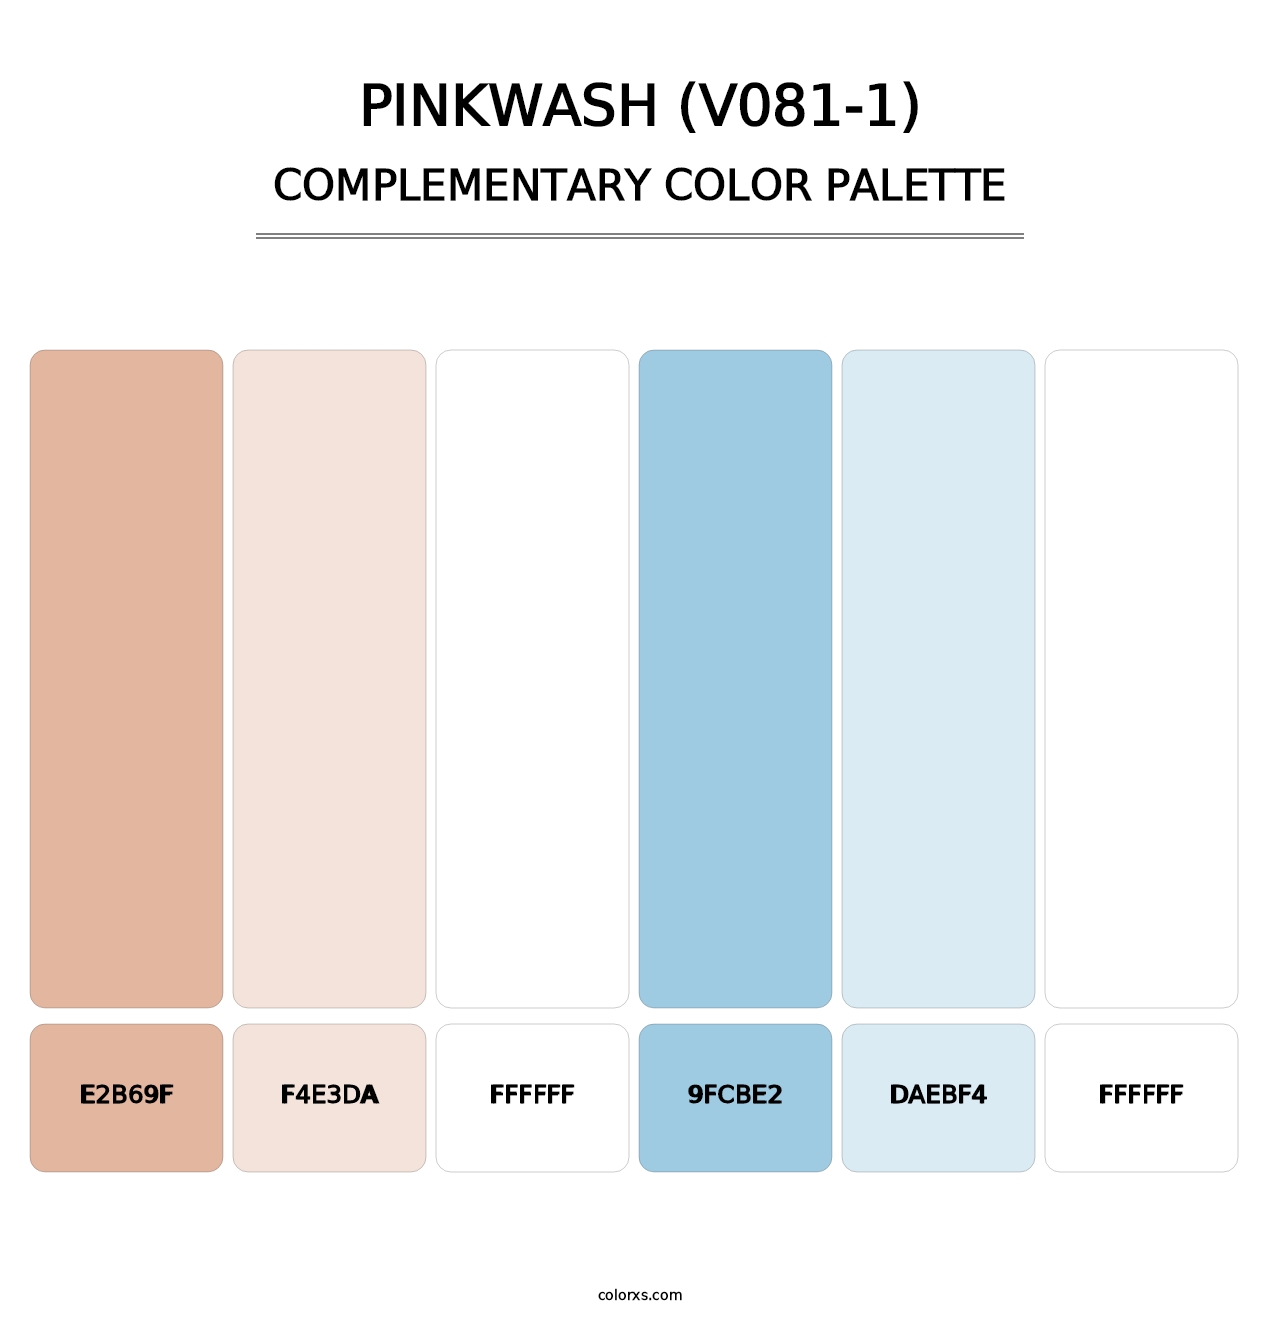 Pinkwash (V081-1) - Complementary Color Palette